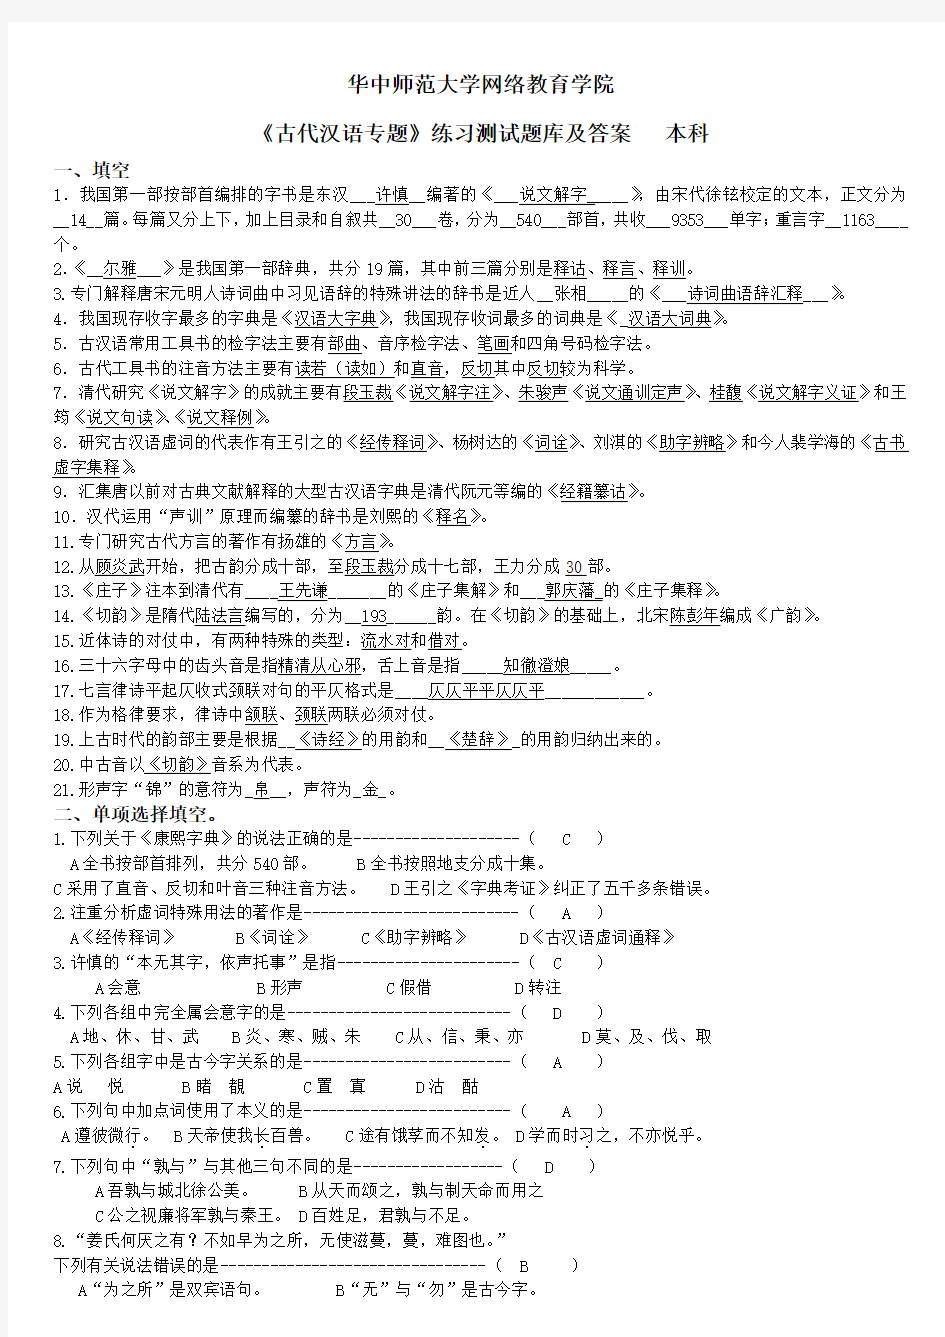 (完整)《古代汉语专题》练习题库及答案,推荐文档